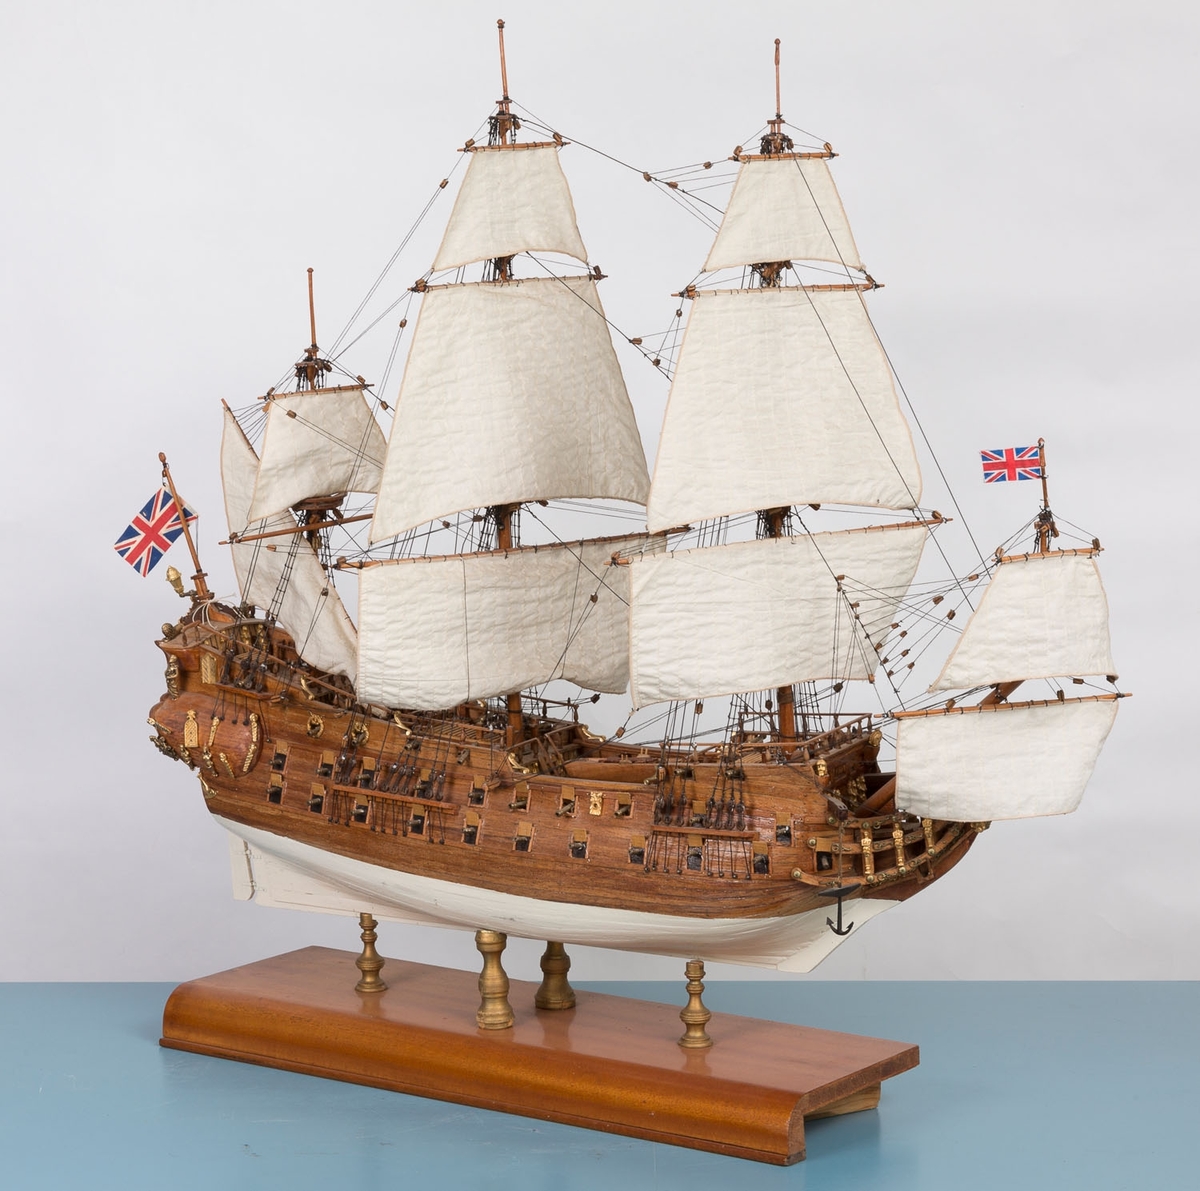 Modell av "Det engelske kongeskip" fra 1680
Bækvolds produksjonsnummer 26
Materialomkostninger oppgitt til kr. 500,-